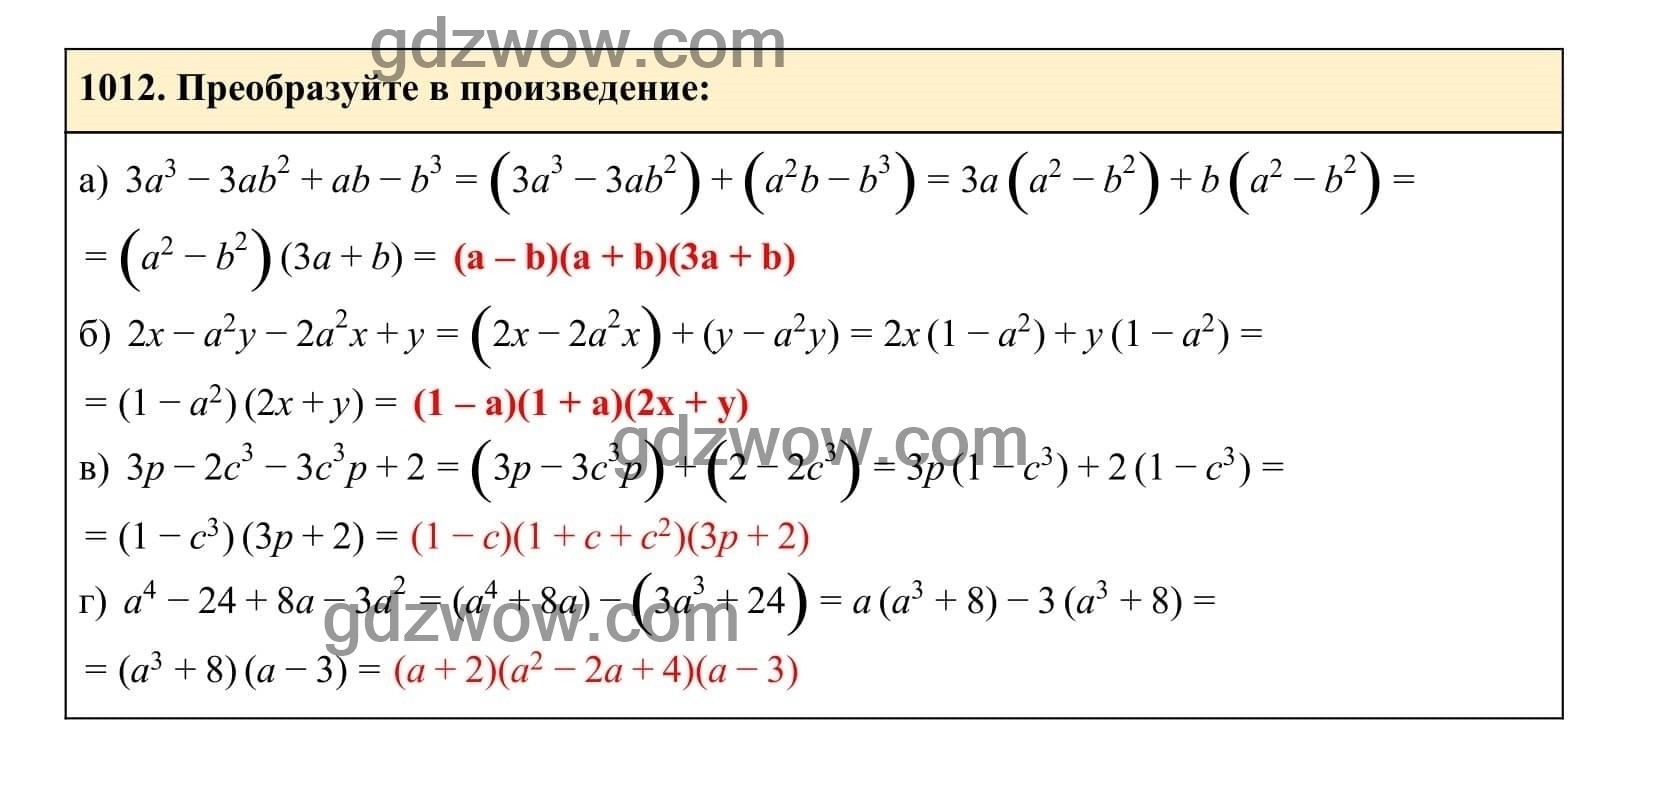 Упражнение 1012 - ГДЗ по Алгебре 7 класс Учебник Макарычев (решебник) - GDZwow